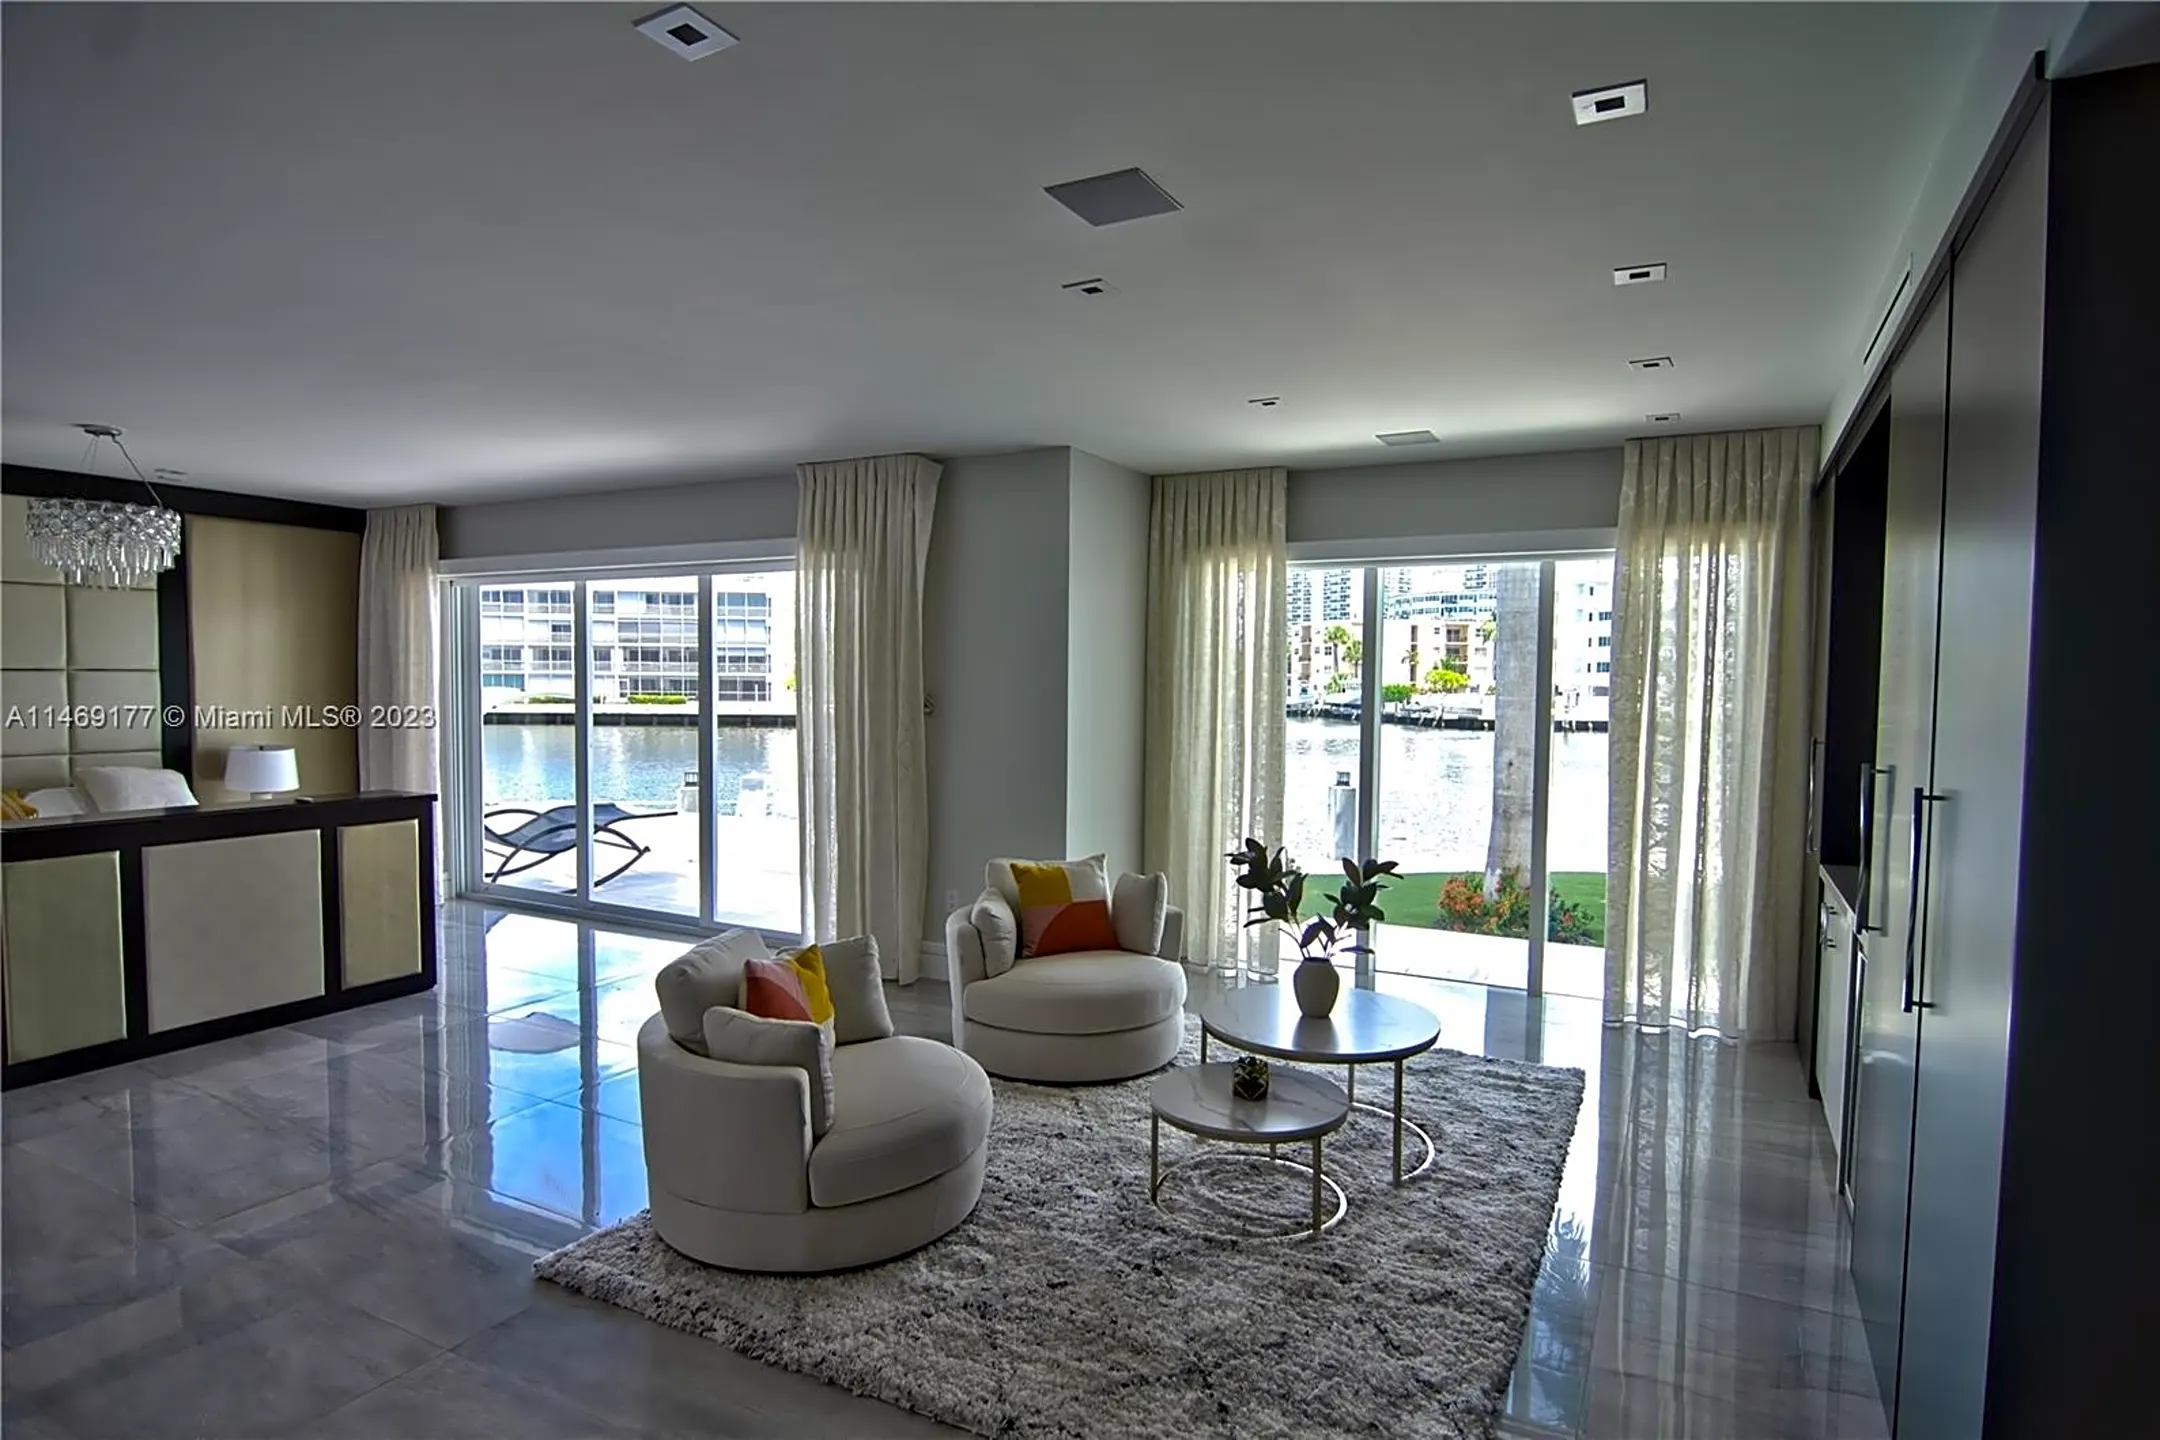 Living Room - 2890 NE 28th St - Fort Lauderdale, FL